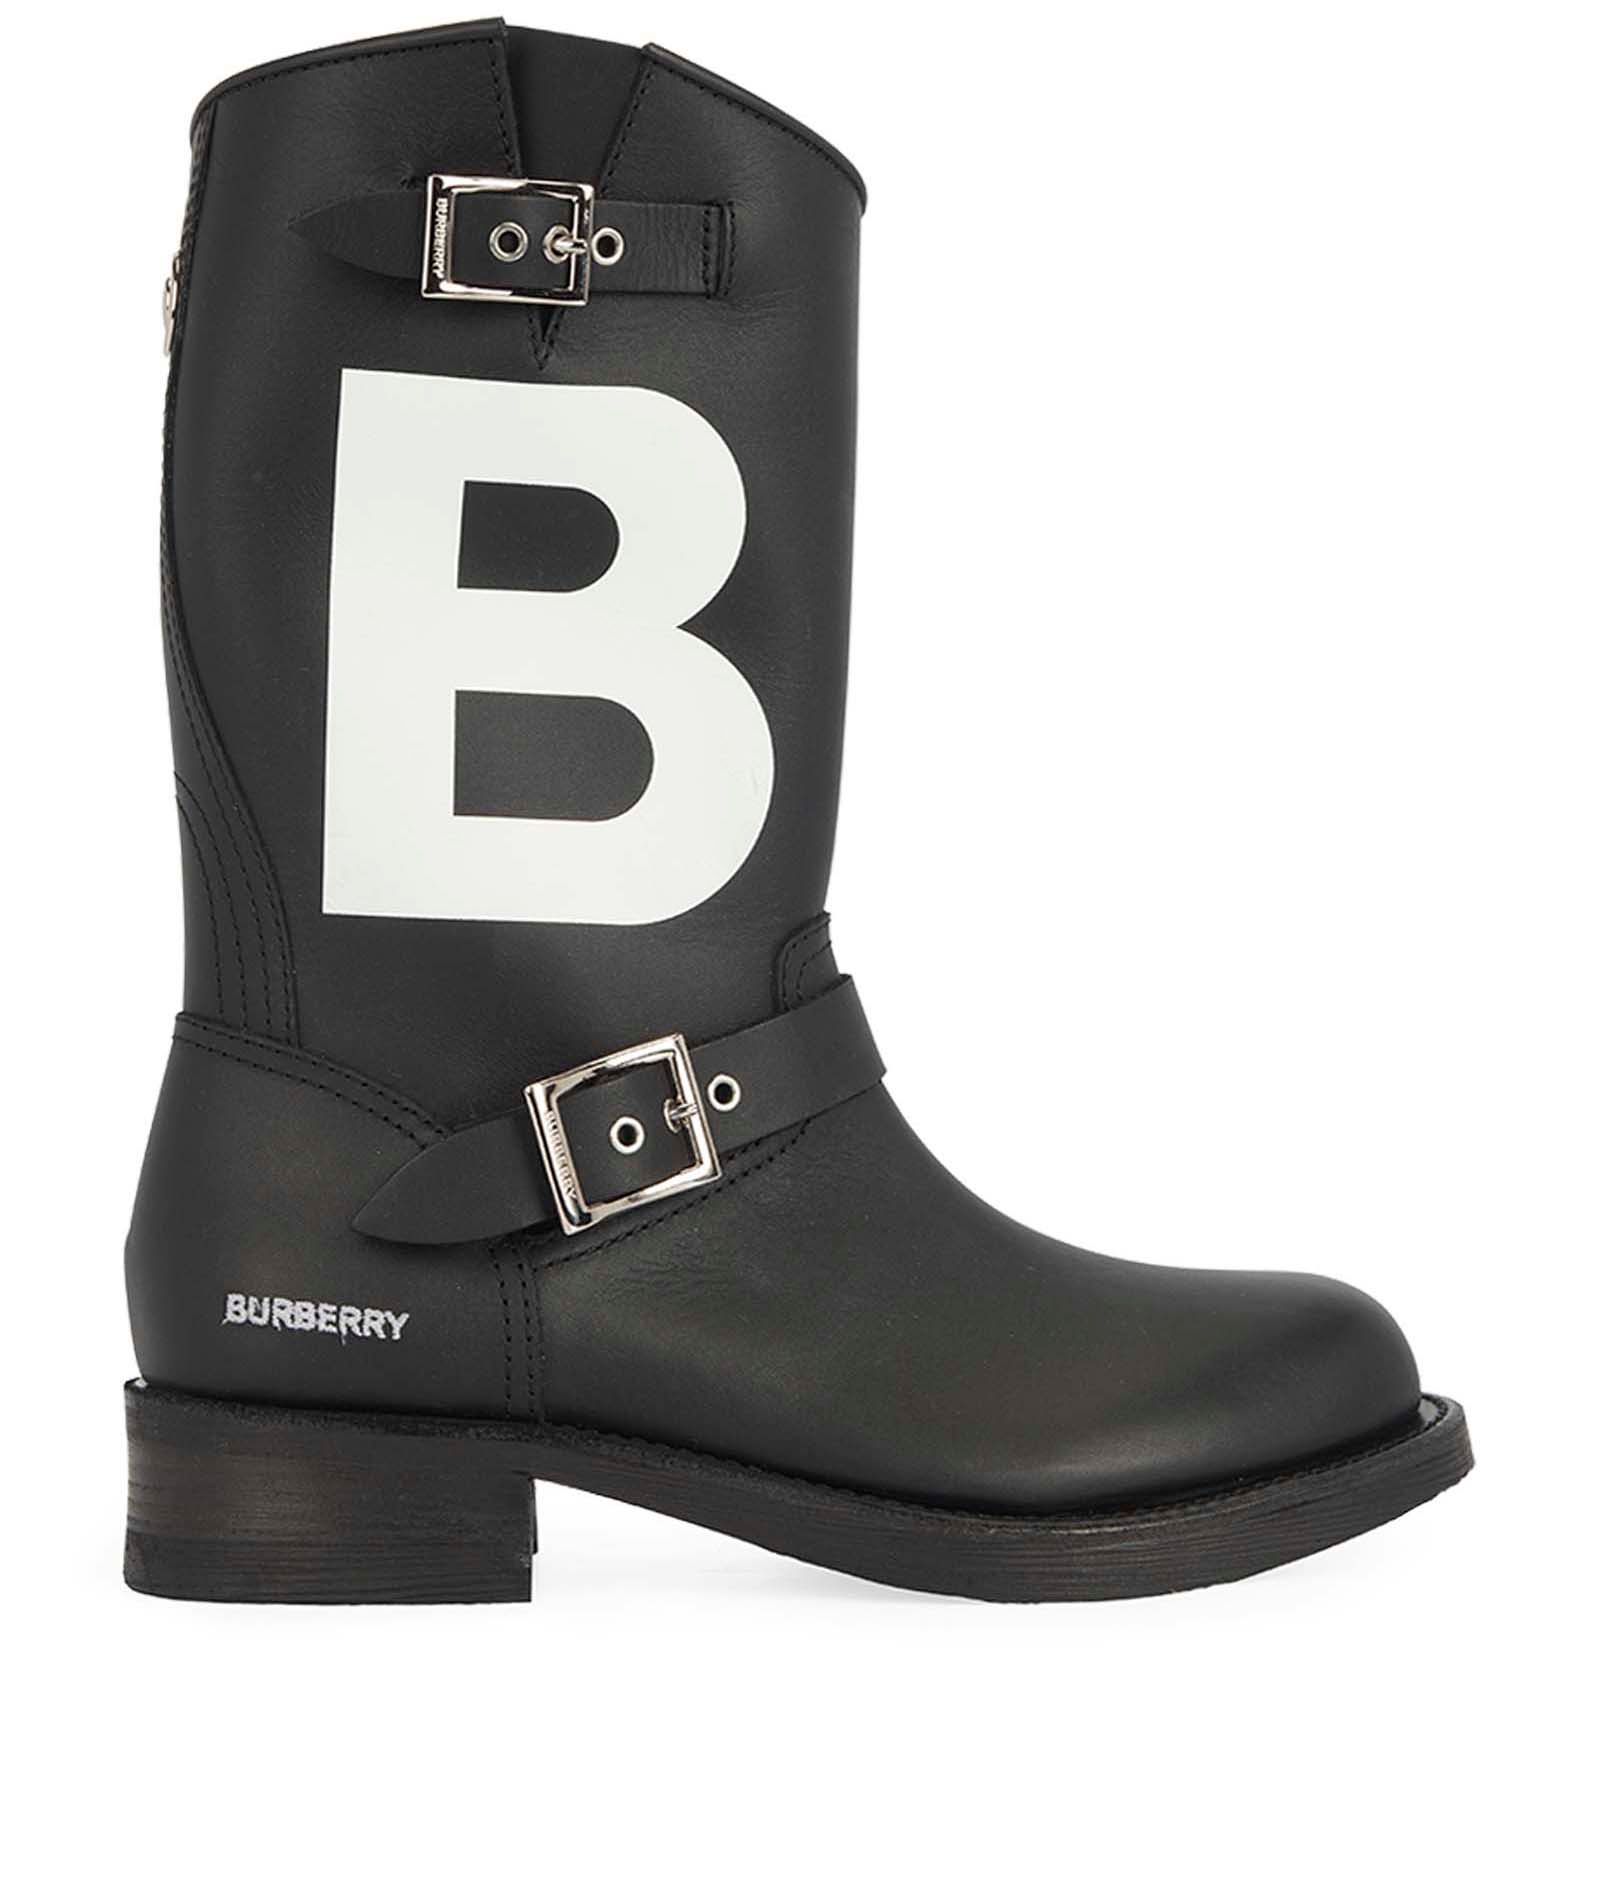 Burberry TB Motif Biker Boots, - Designer Exchange | Buy Sell